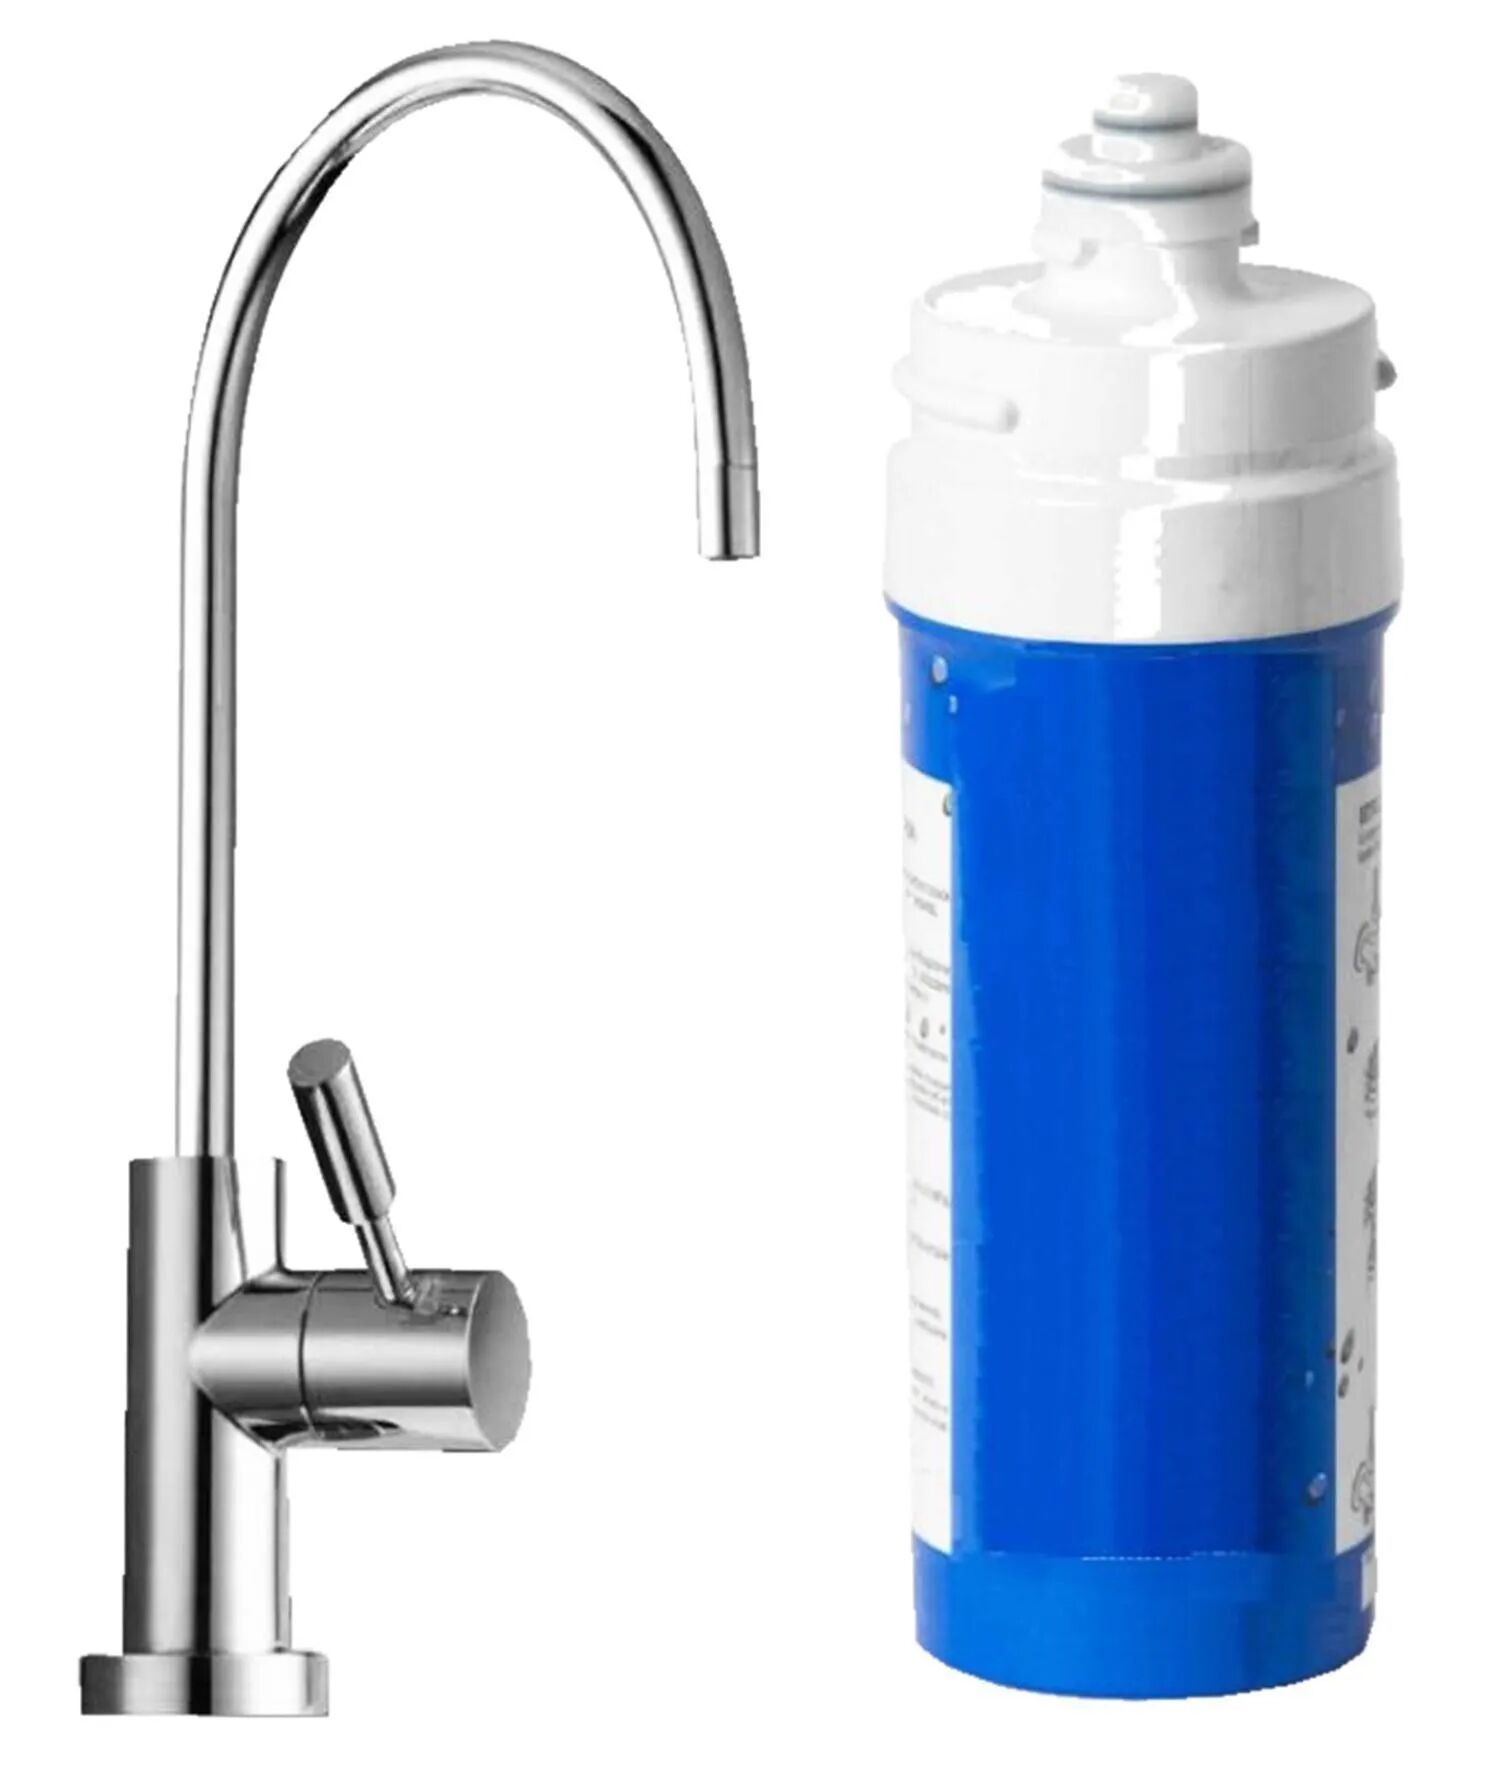 acquafiltra kit trattamento acquabuona-ra con rubinetto